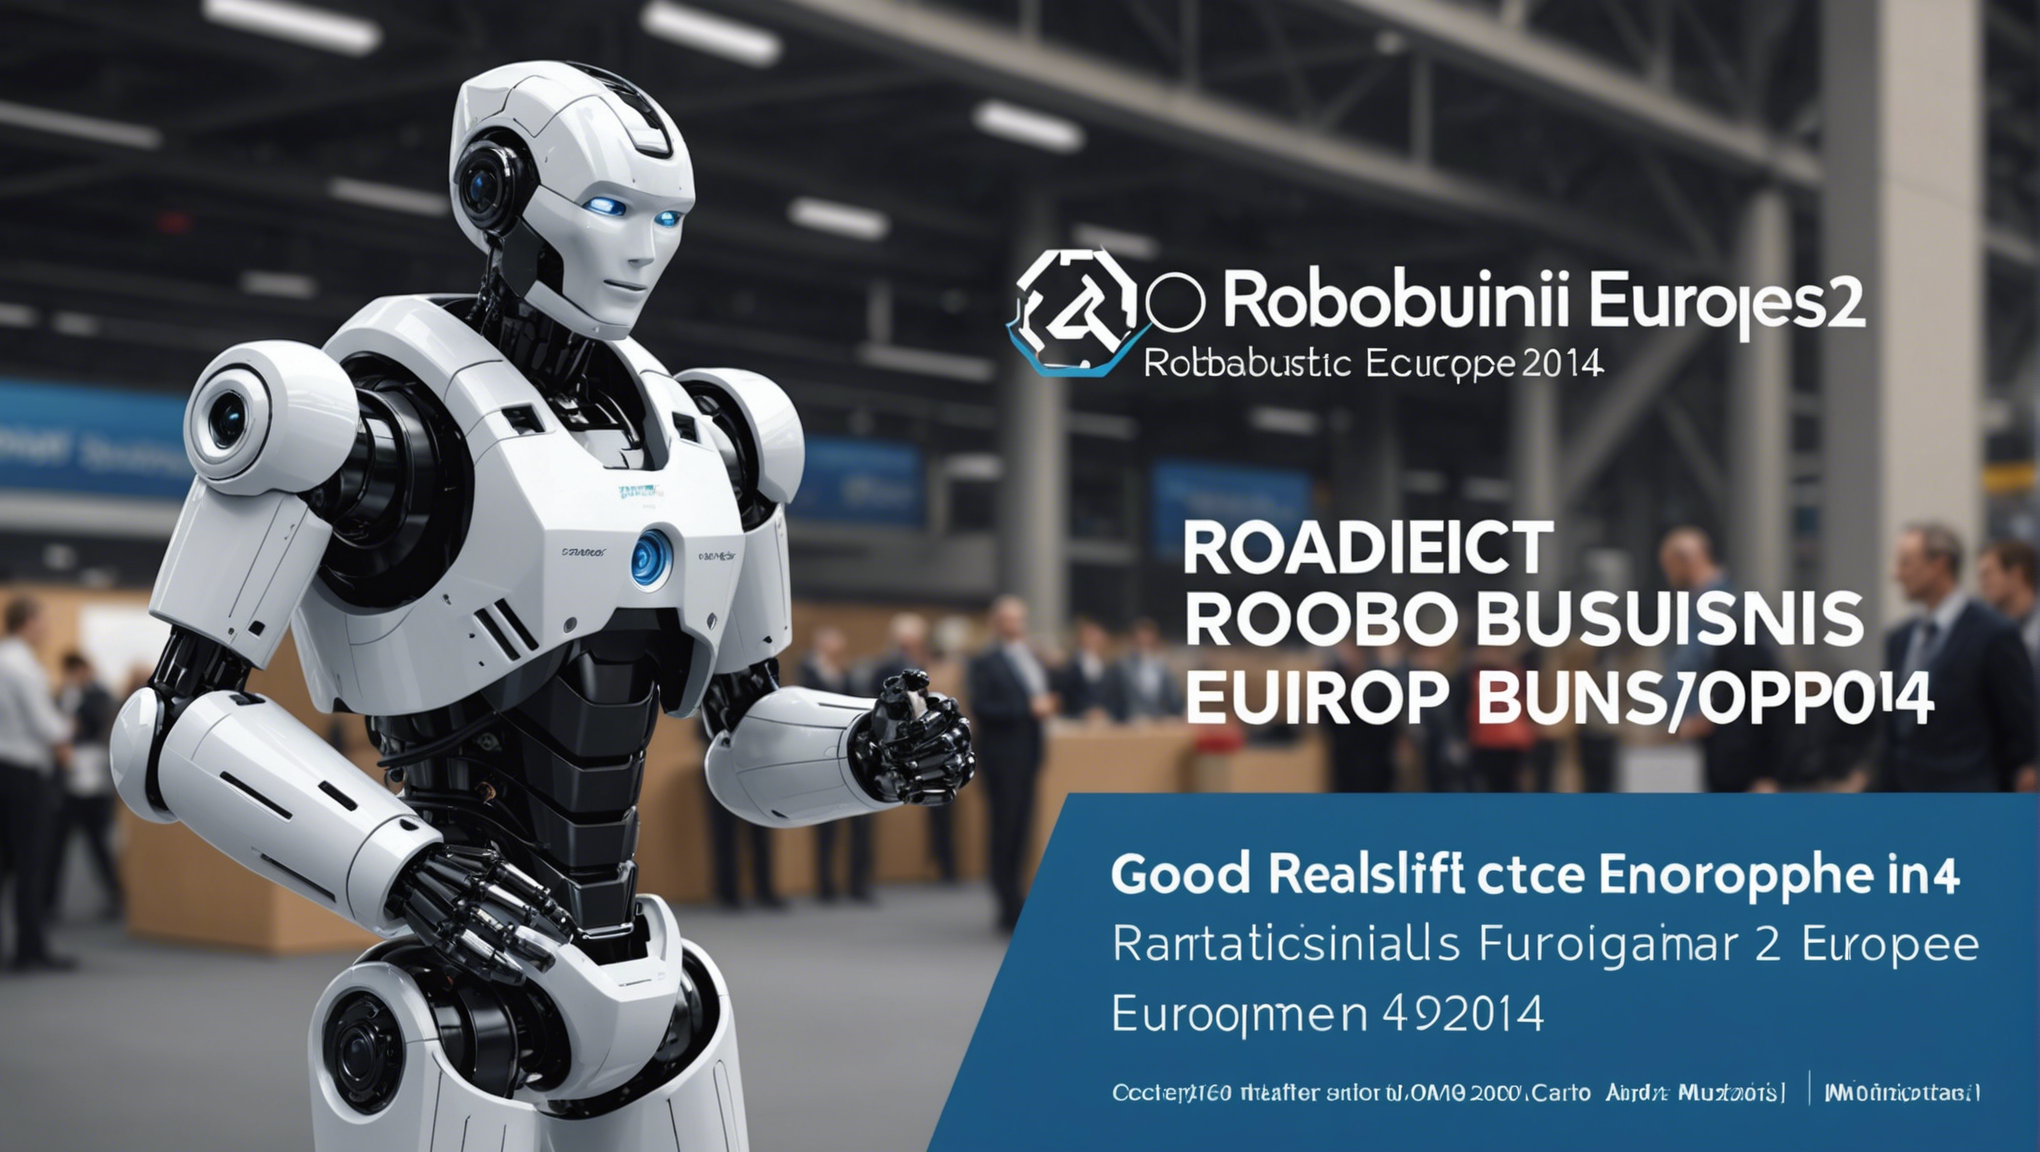 découvrez les bonnes raisons de participer à robobusiness europe 2014 et entrez dans le monde fascinant de la robotique et de l'innovation technologique.